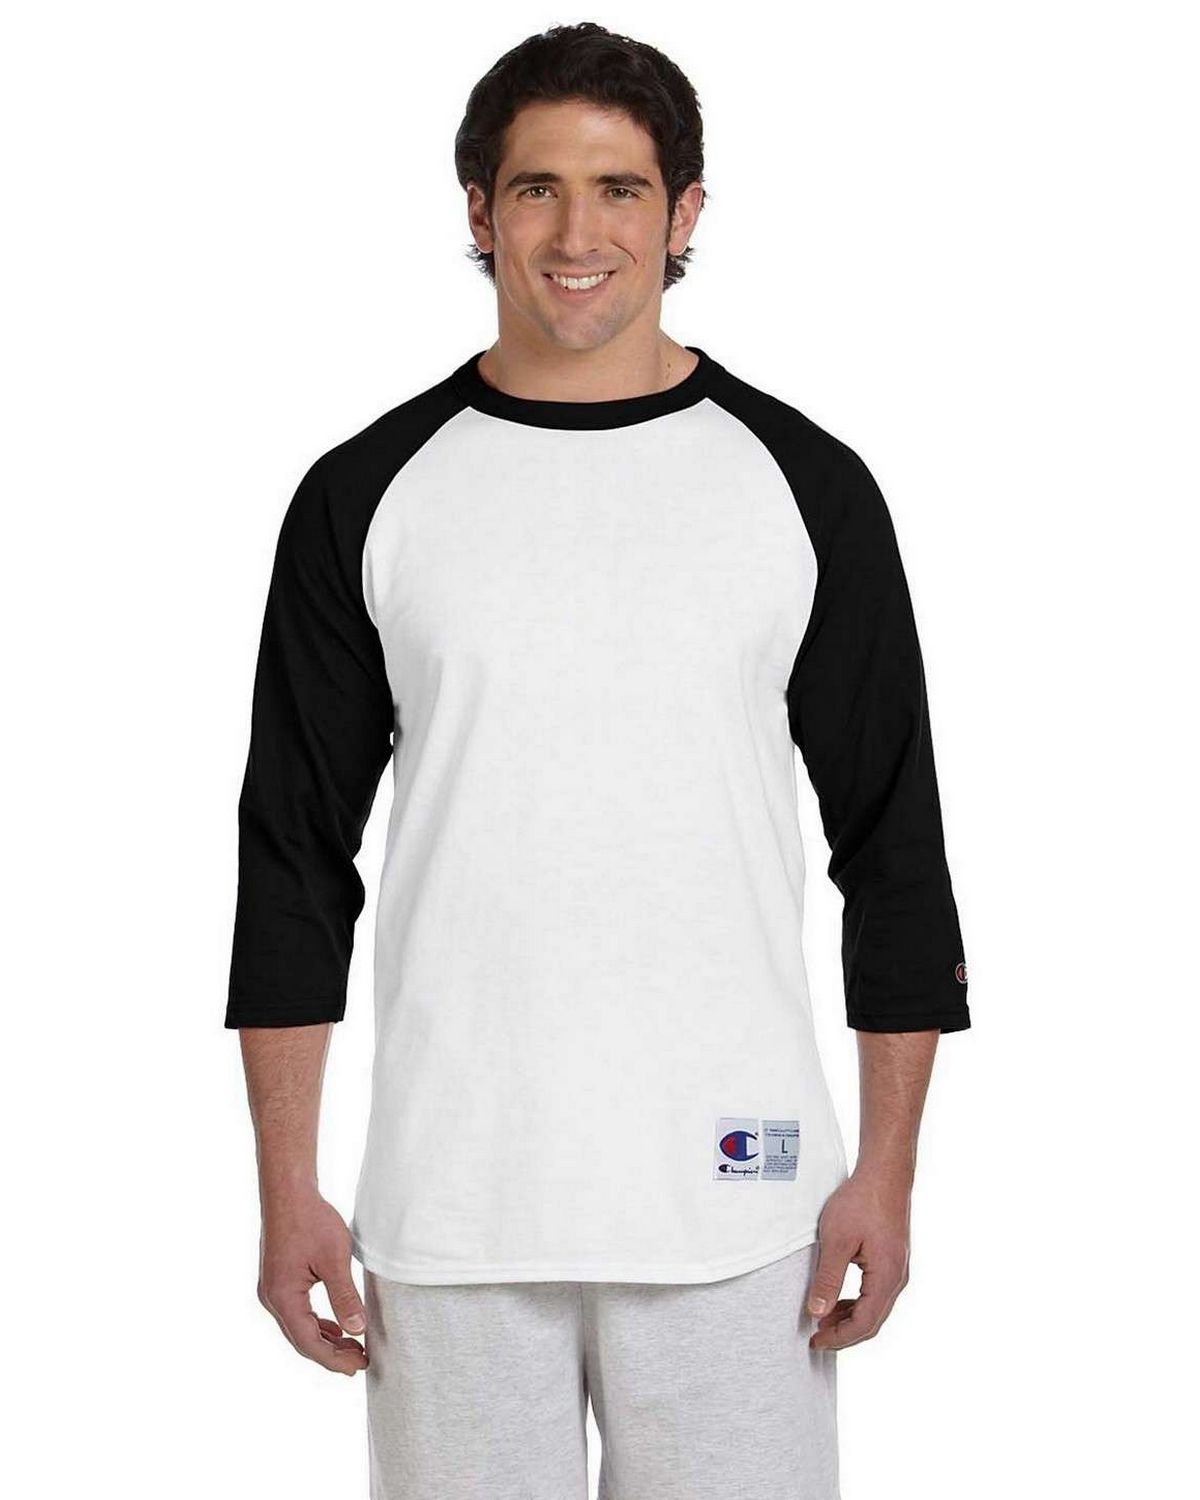 zwaar eenheid fax Champion T1397 100% Cotton Tagless Raglan Baseball T Shirt